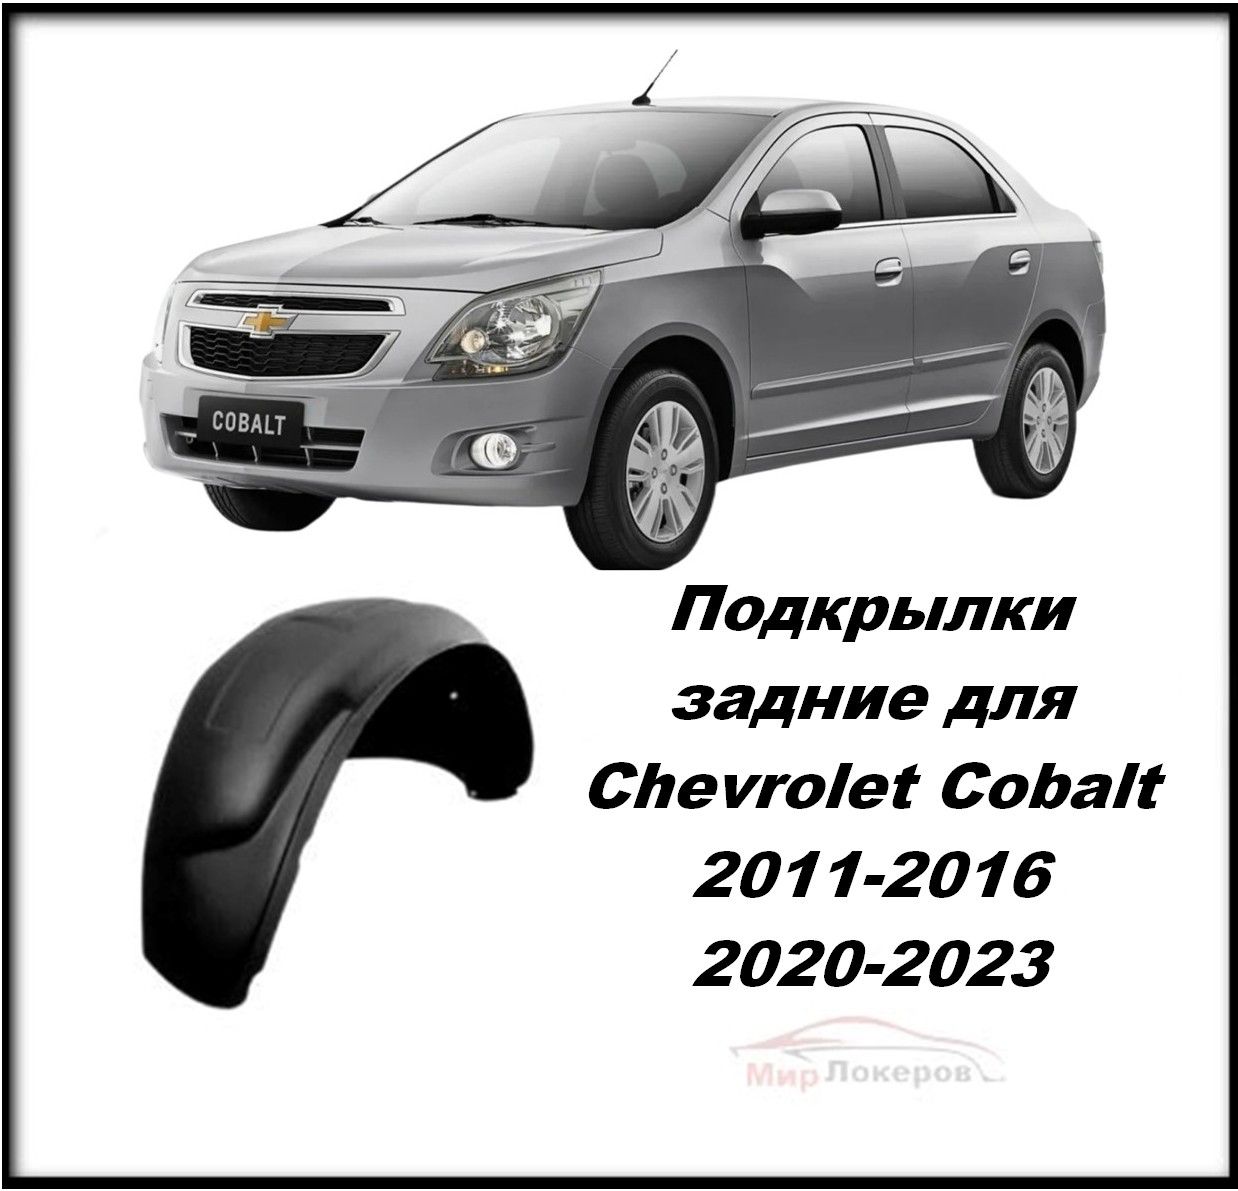 Шумоизоляция и антикоррозийная обработка Chevrolet